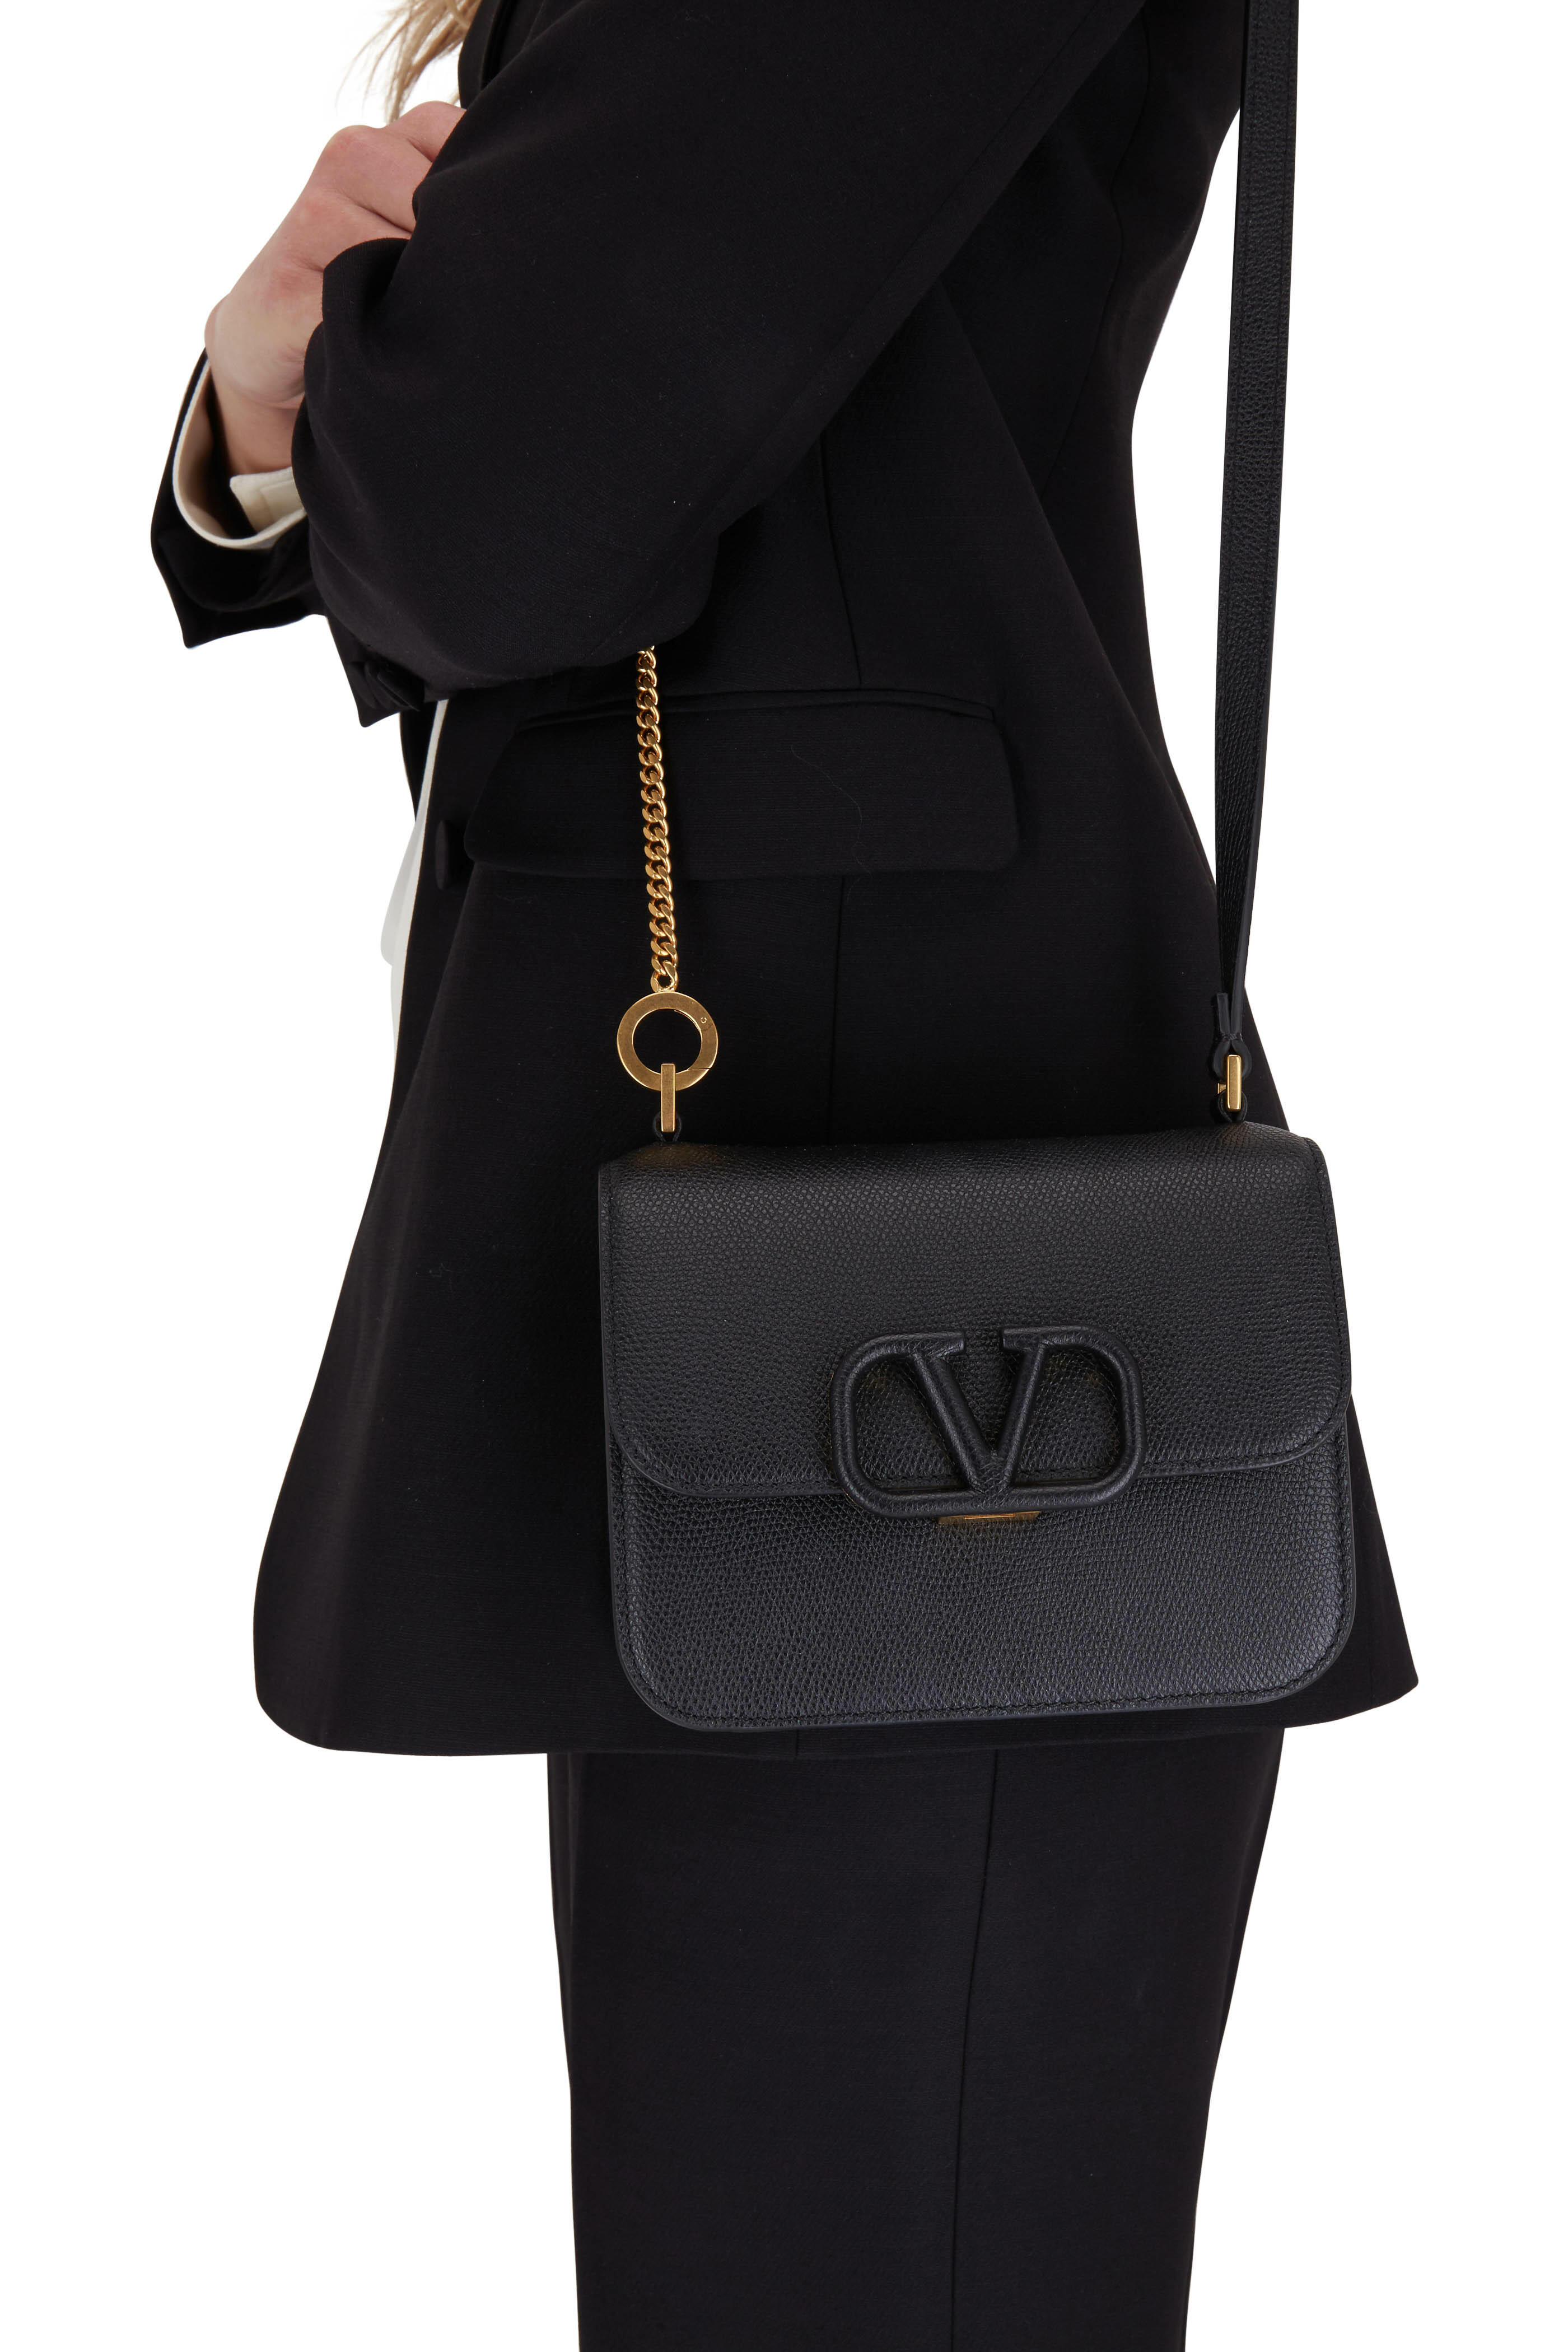 Valentino Black Leather Small Vsling Shoulder Bag